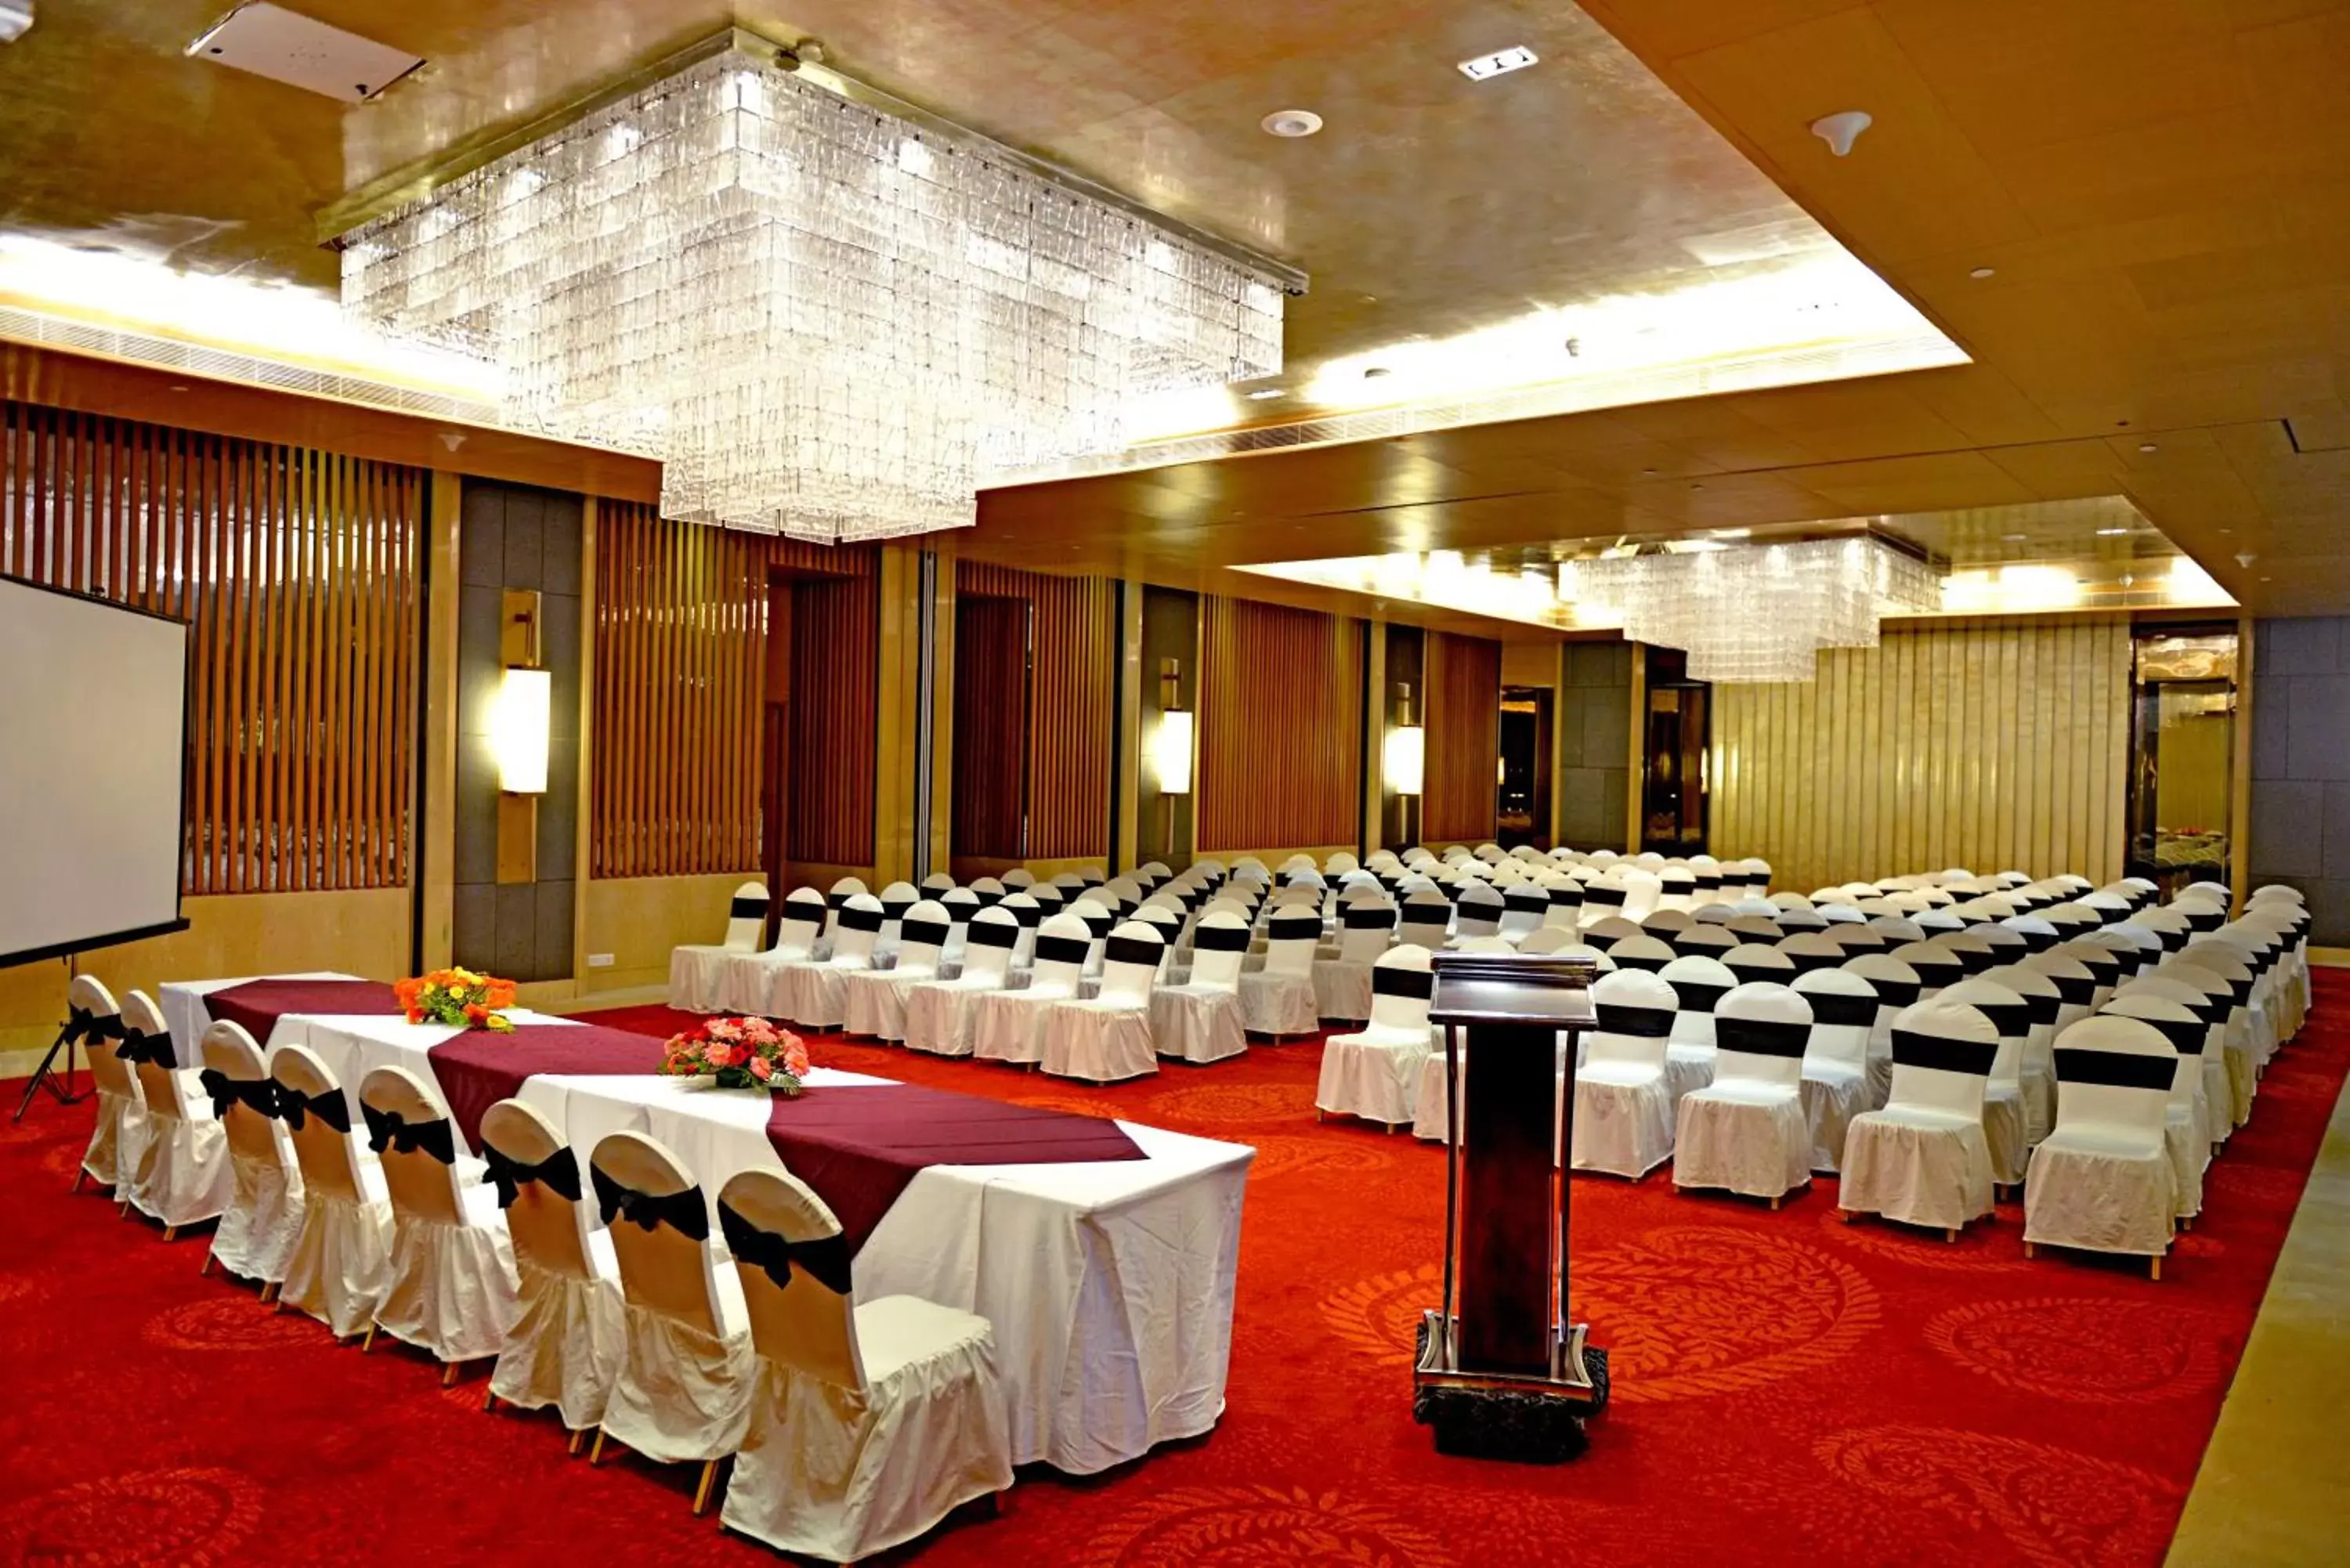 Banquet/Function facilities, Banquet Facilities in Radisson Blu Jaipur